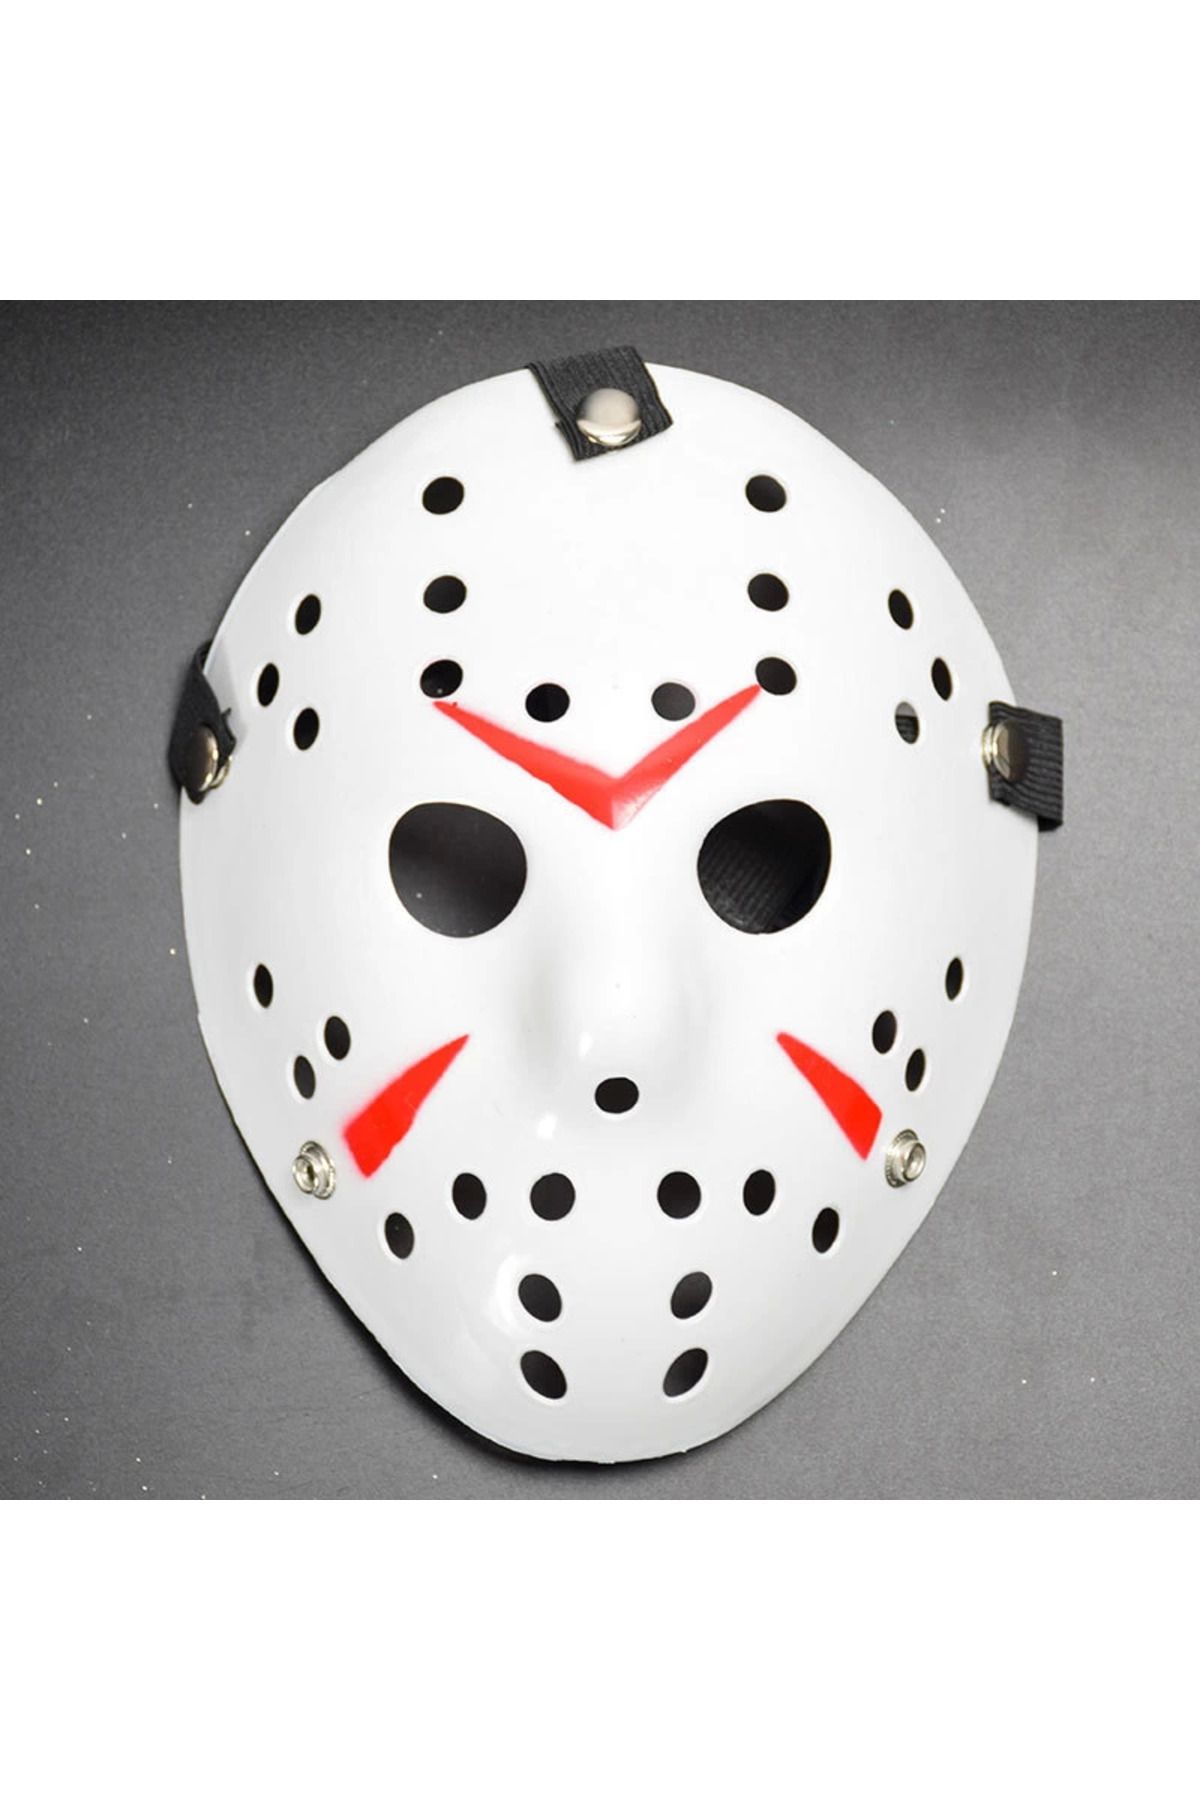 Wisdom Rain Beyaz Renk Kırmızı Çizgili Tam Yüz Hokey Jason Maskesi Hannibal Maskesi